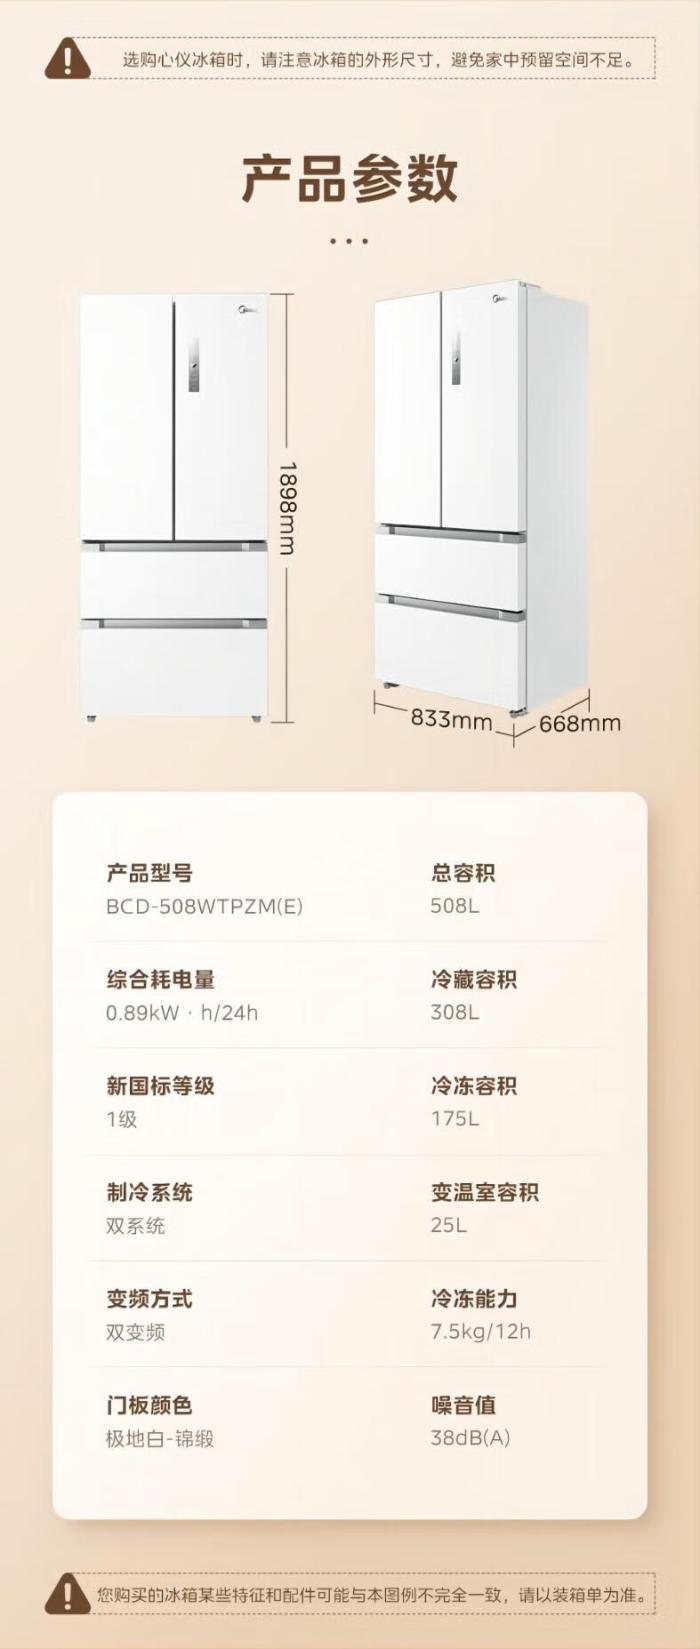 日常 5799 元：美的 508L 双系统冰箱 4026 元京东新低（6.9 折）-冯金伟博客园